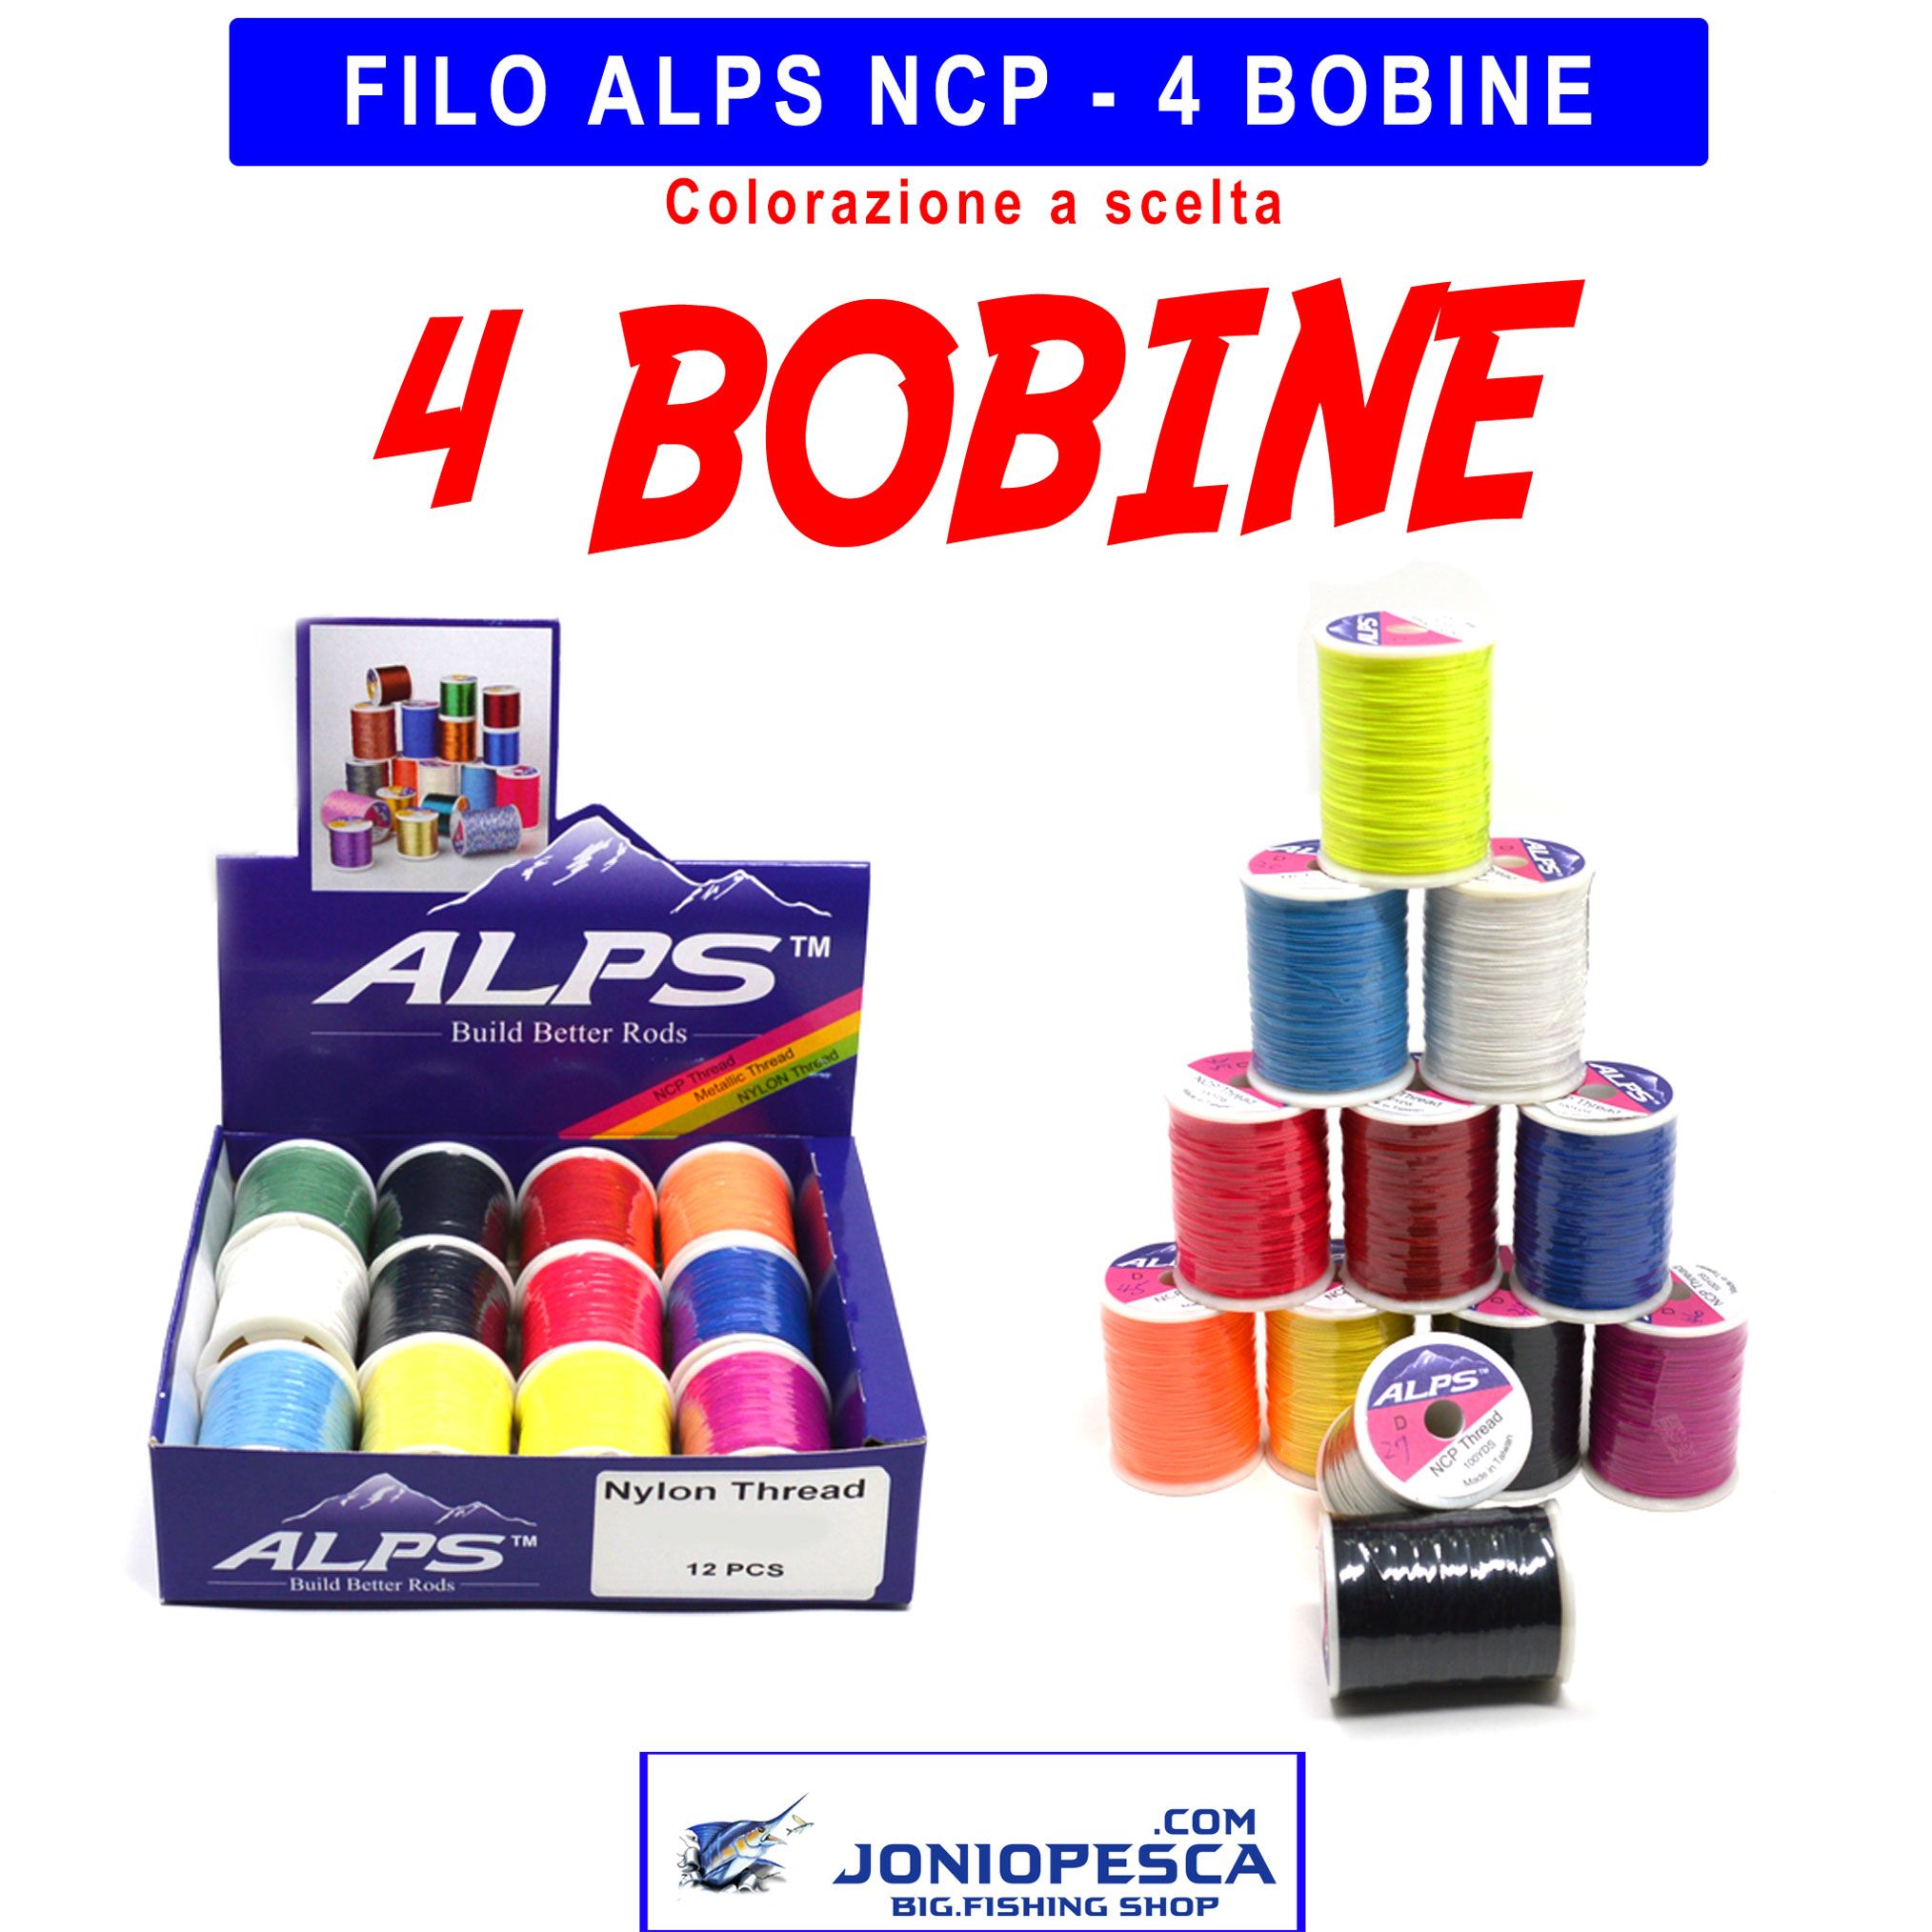 4-bobine-alps-filo-ncp